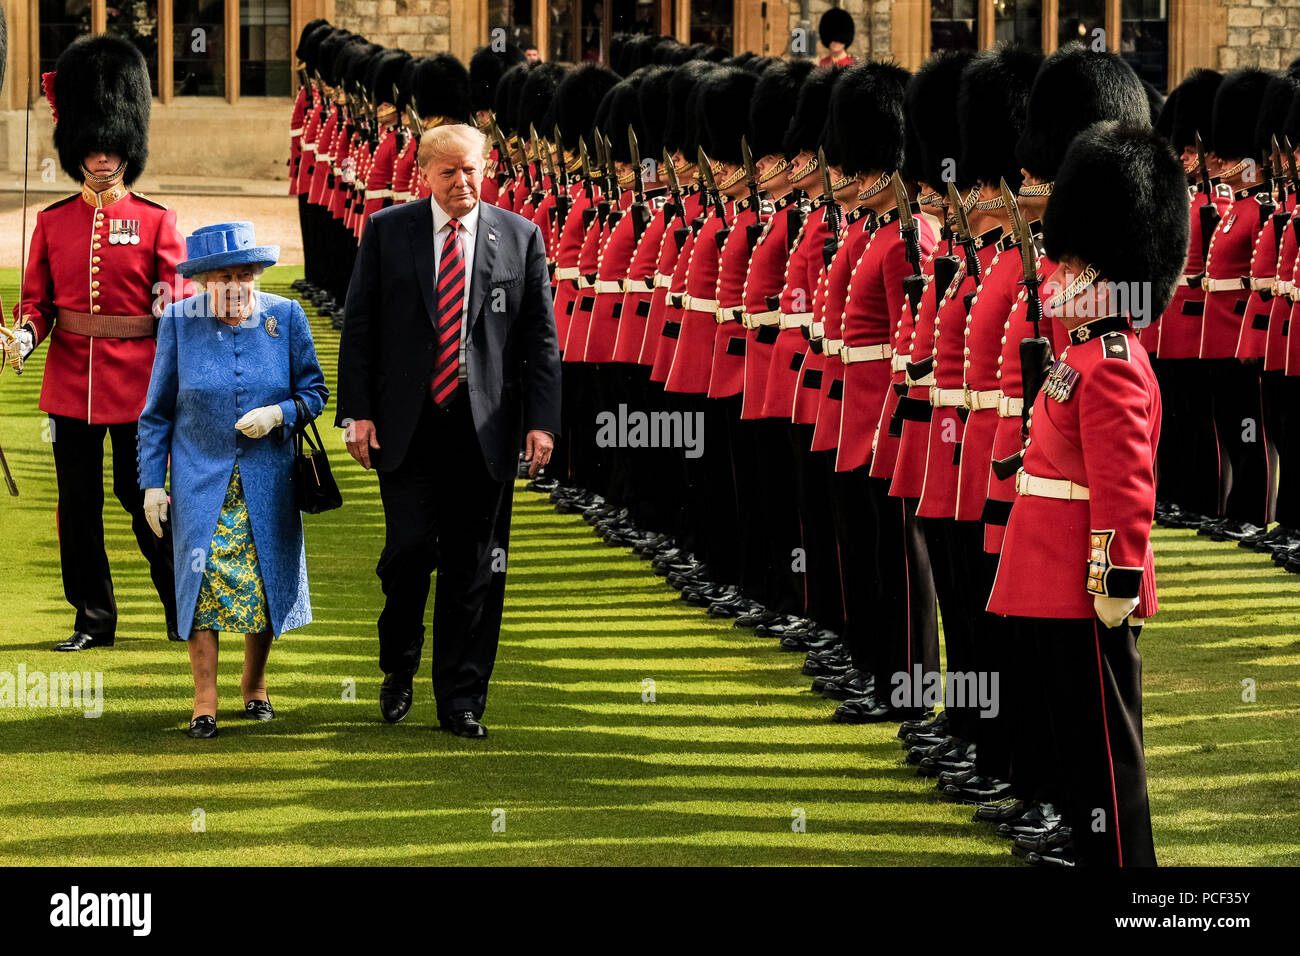 Die Königin trifft der Präsident der Vereinigten Staaten von Amerika und Frau Trump am Freitag, 13. Juli 2018 auf Schloss Windsor, Windsor. Im Bild: SEINE KÖNIGLICHE HOHEIT, Queen Elizabeth II. mit Präsident Trump prüfen die Ehrengarde - Coldstream Guards. Stockfoto